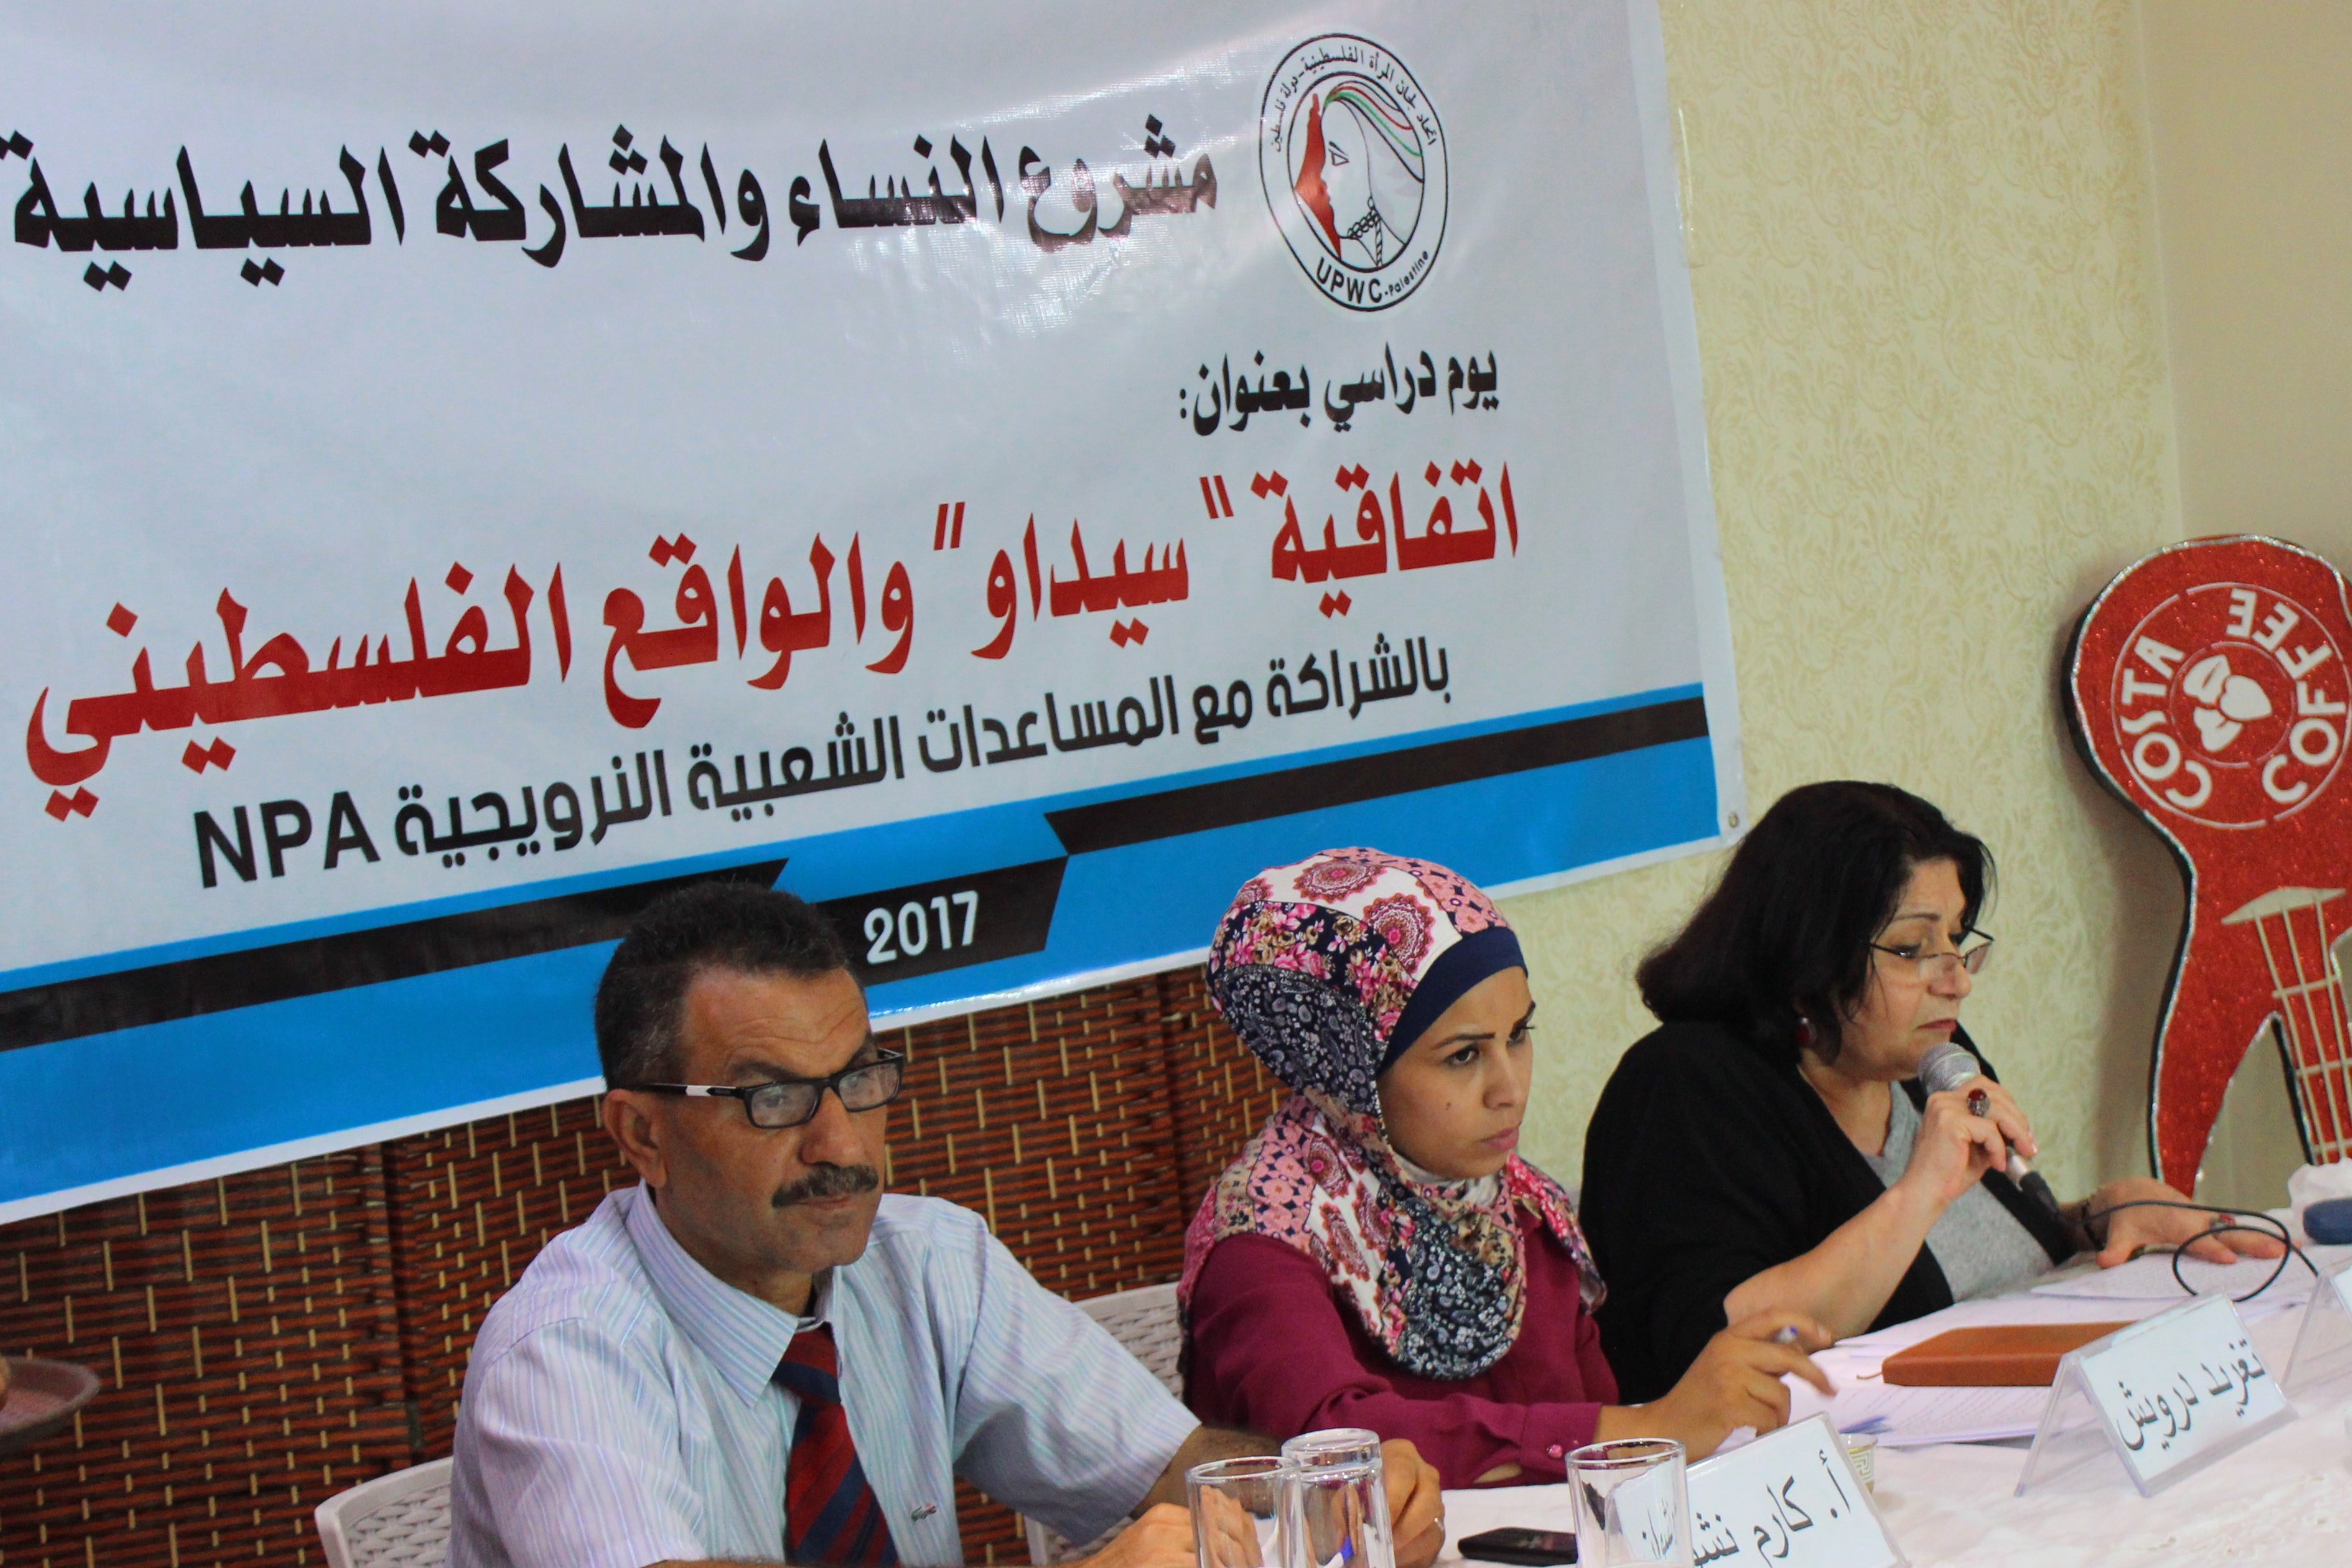 اتحاد لجان المرأة الفلسطينية ينفذ يوما دراسيا بعنوان ” اتفاقية سيداو والواقع الفلسطيني ” في الوسطى